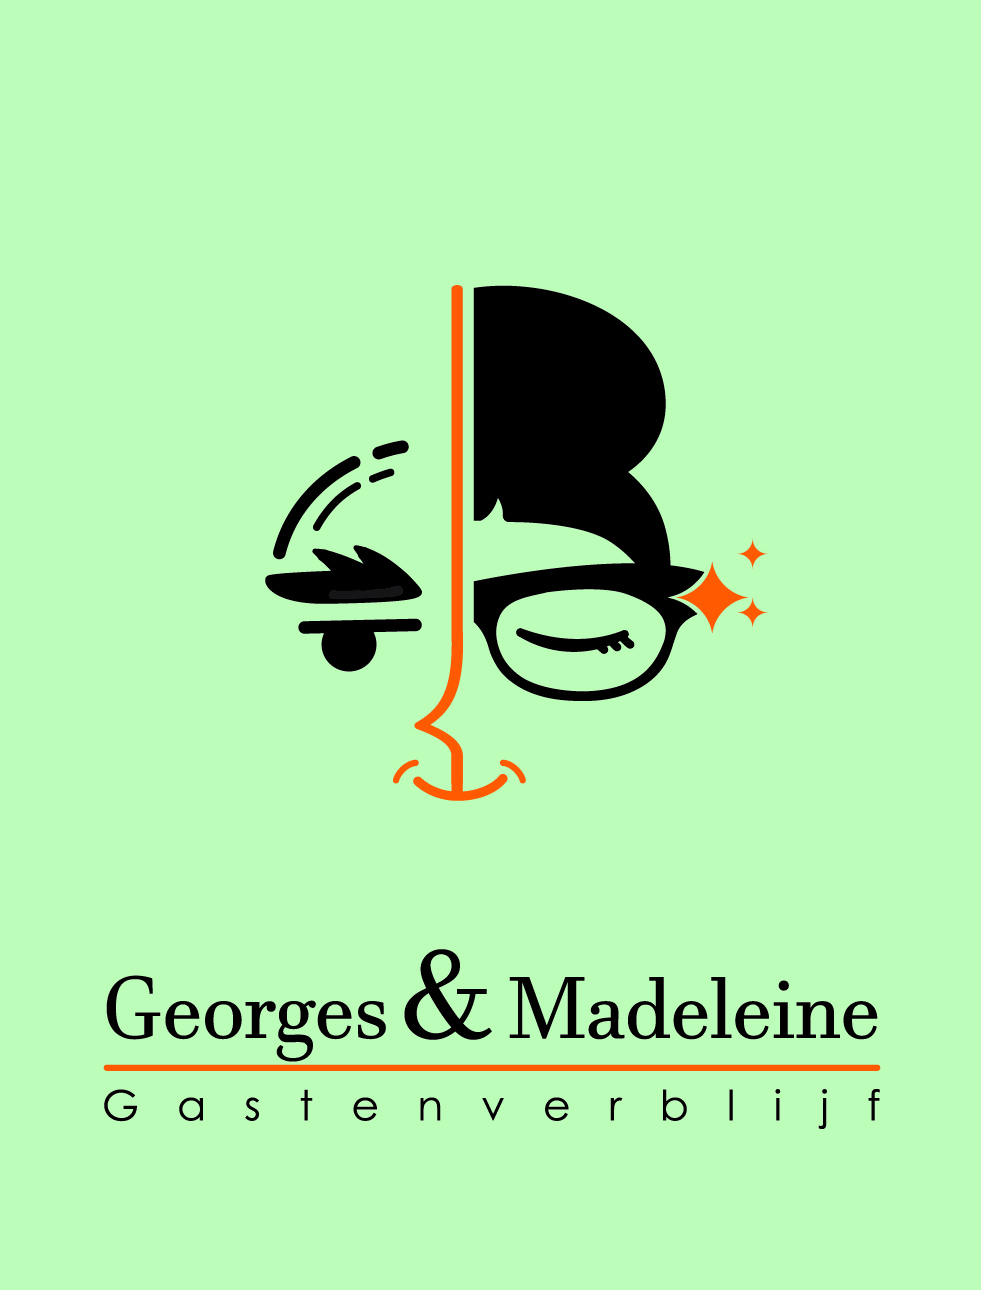 Georges & Madeleine gastenverblijf